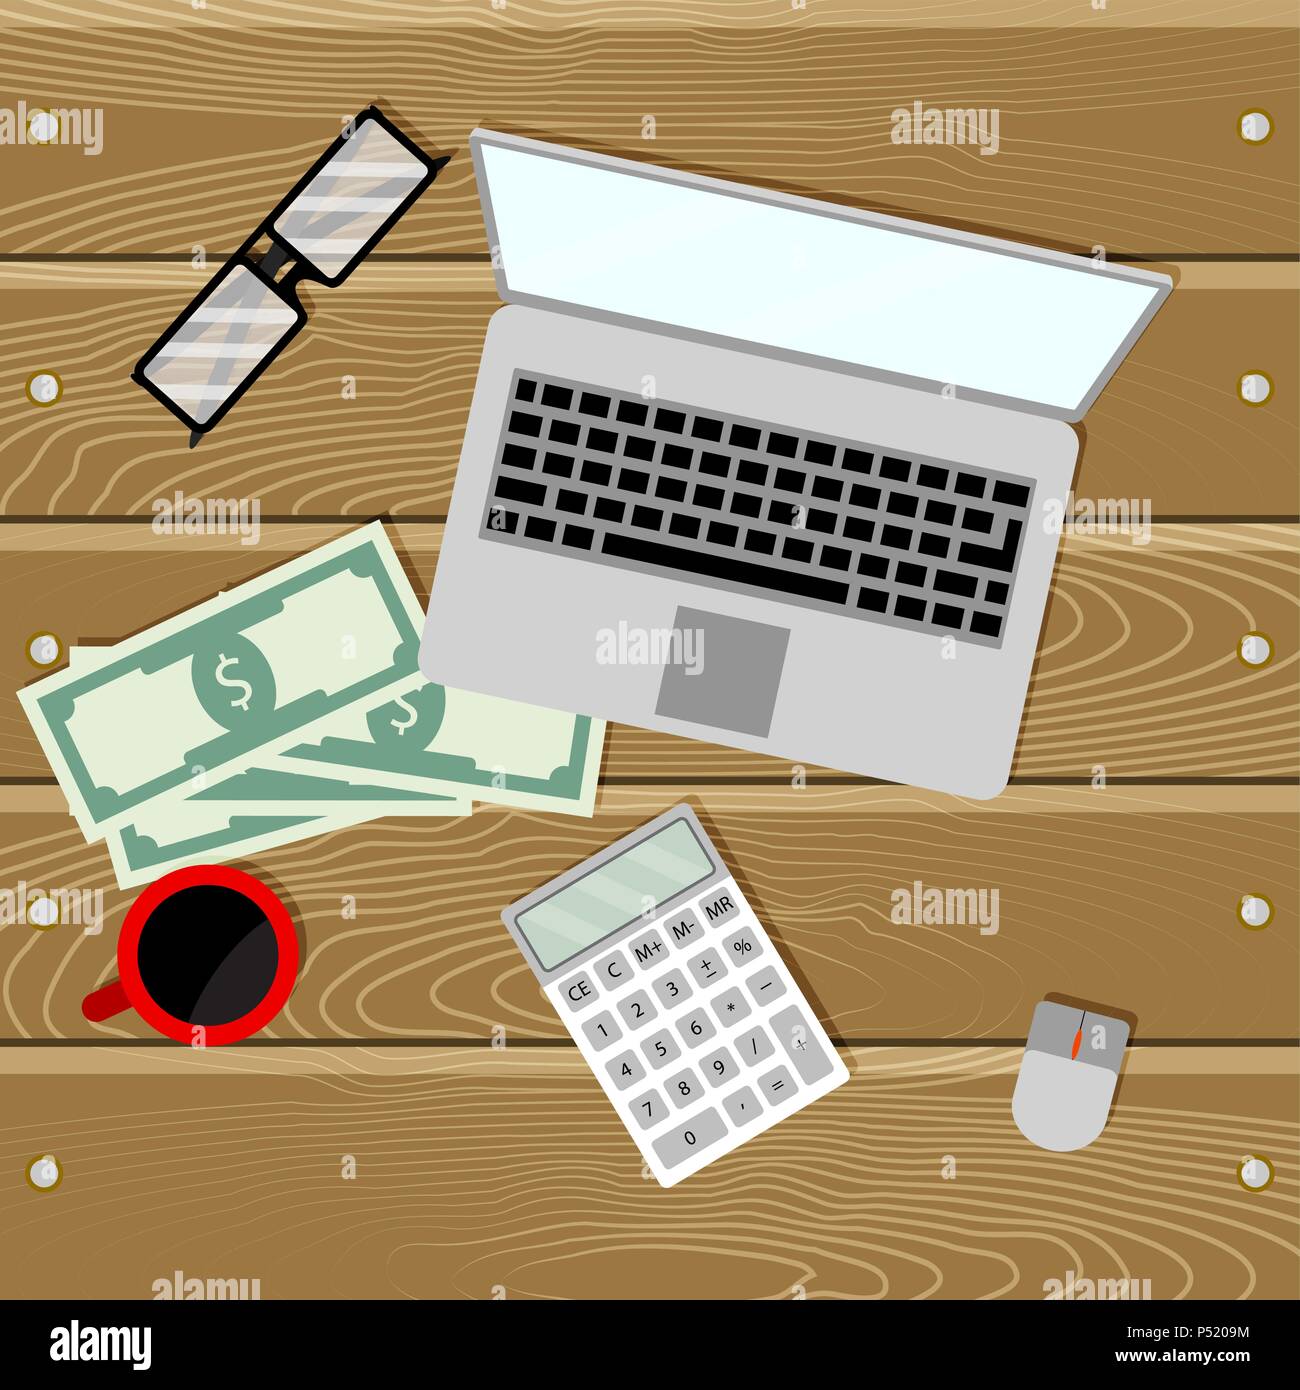 Prüfung der Rechnungsführung auf dem Laptop. Business Management, Finanz- und Rechnungswesen. Vector Illustration Stock Vektor